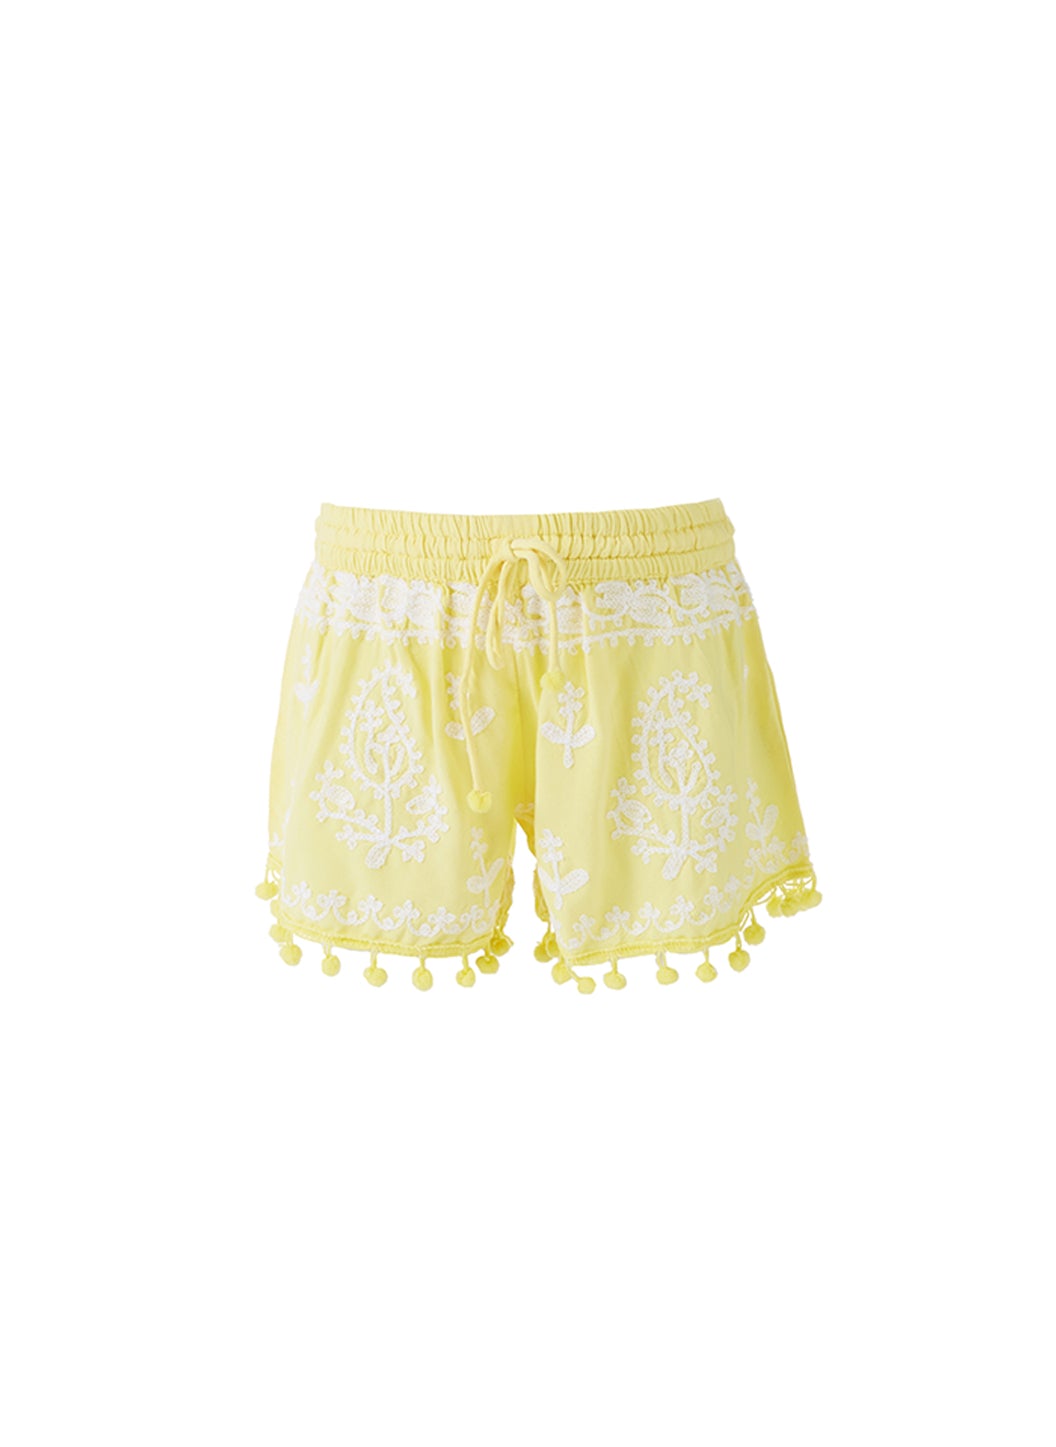 Baby Sienna White/Yellow Shorts